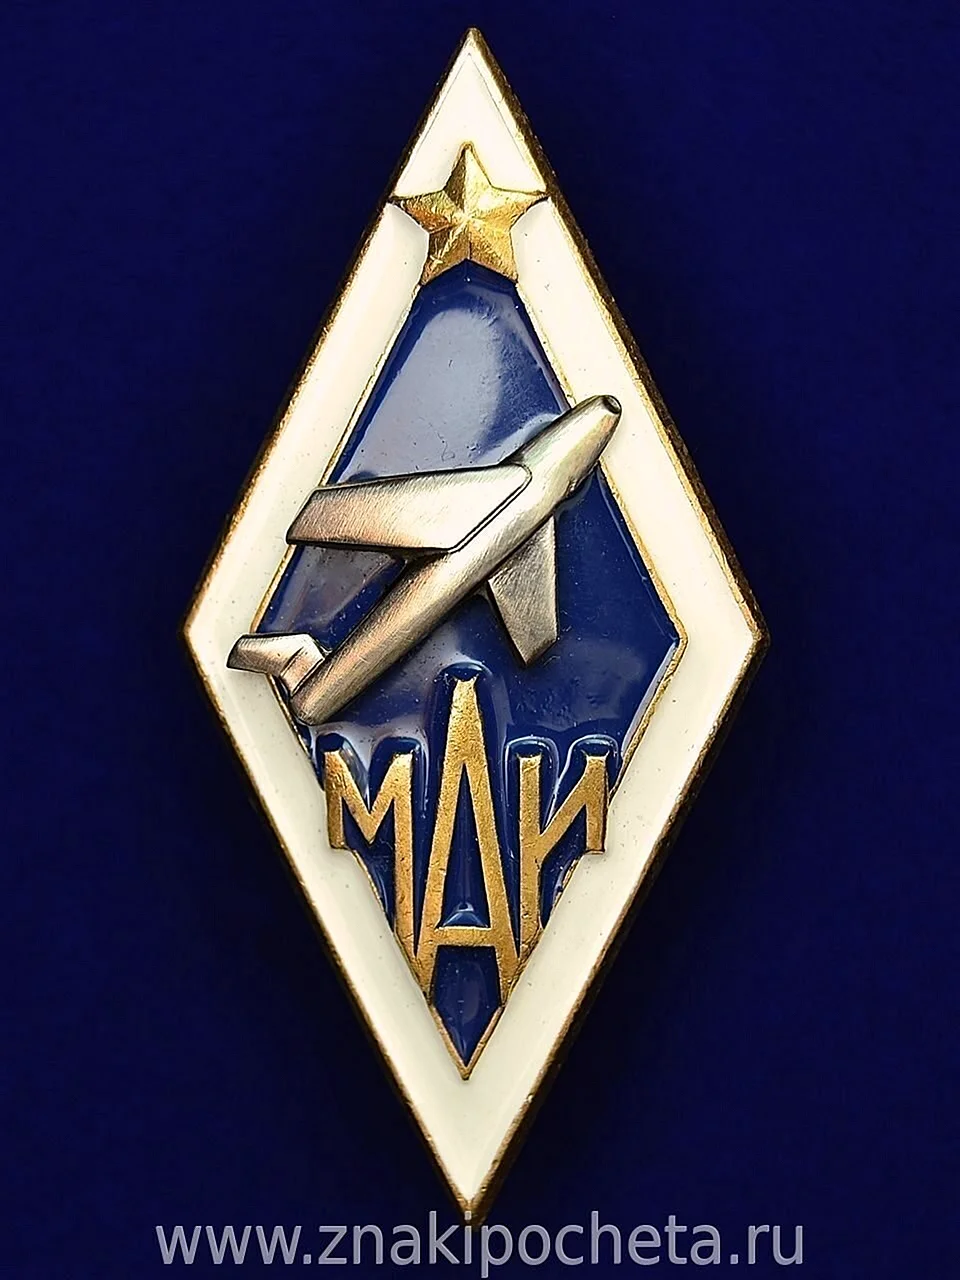 Московский авиационный институт логотип